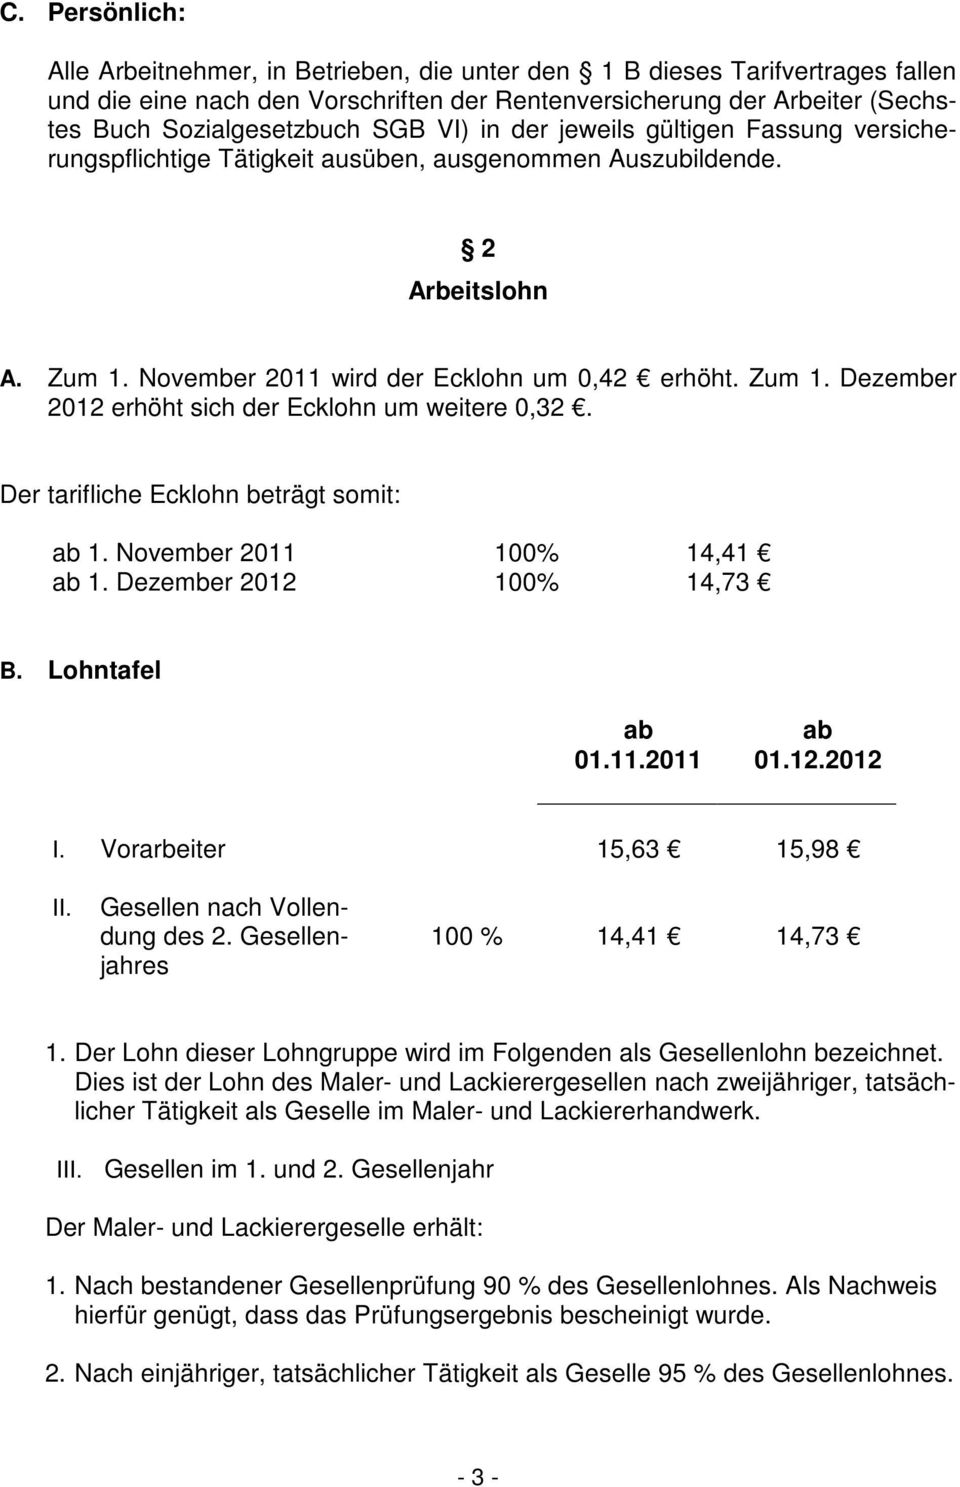 Der tarifliche Ecklohn beträgt somit: 1. November 2011 100% 14,41 1. Dezember 2012 100% 14,73 B. Lohntafel I. Vorarbeiter 15,63 15,98 II. Gesellen nach Vollendung des 2.